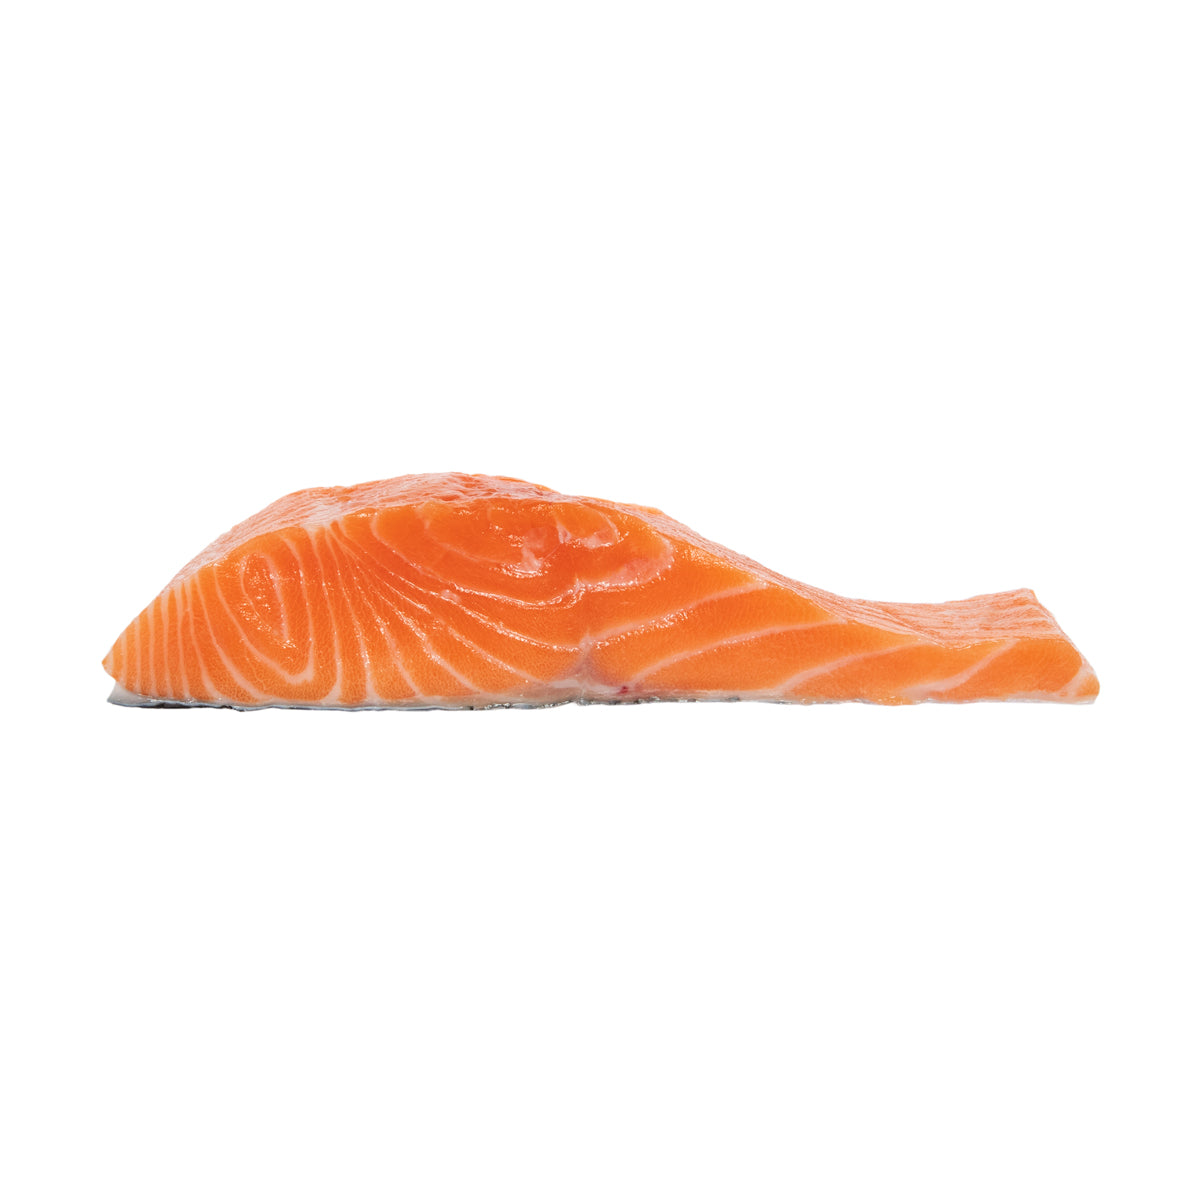 Ora King Salmon Farm Raised PBO Ora King Salmon 1 lb